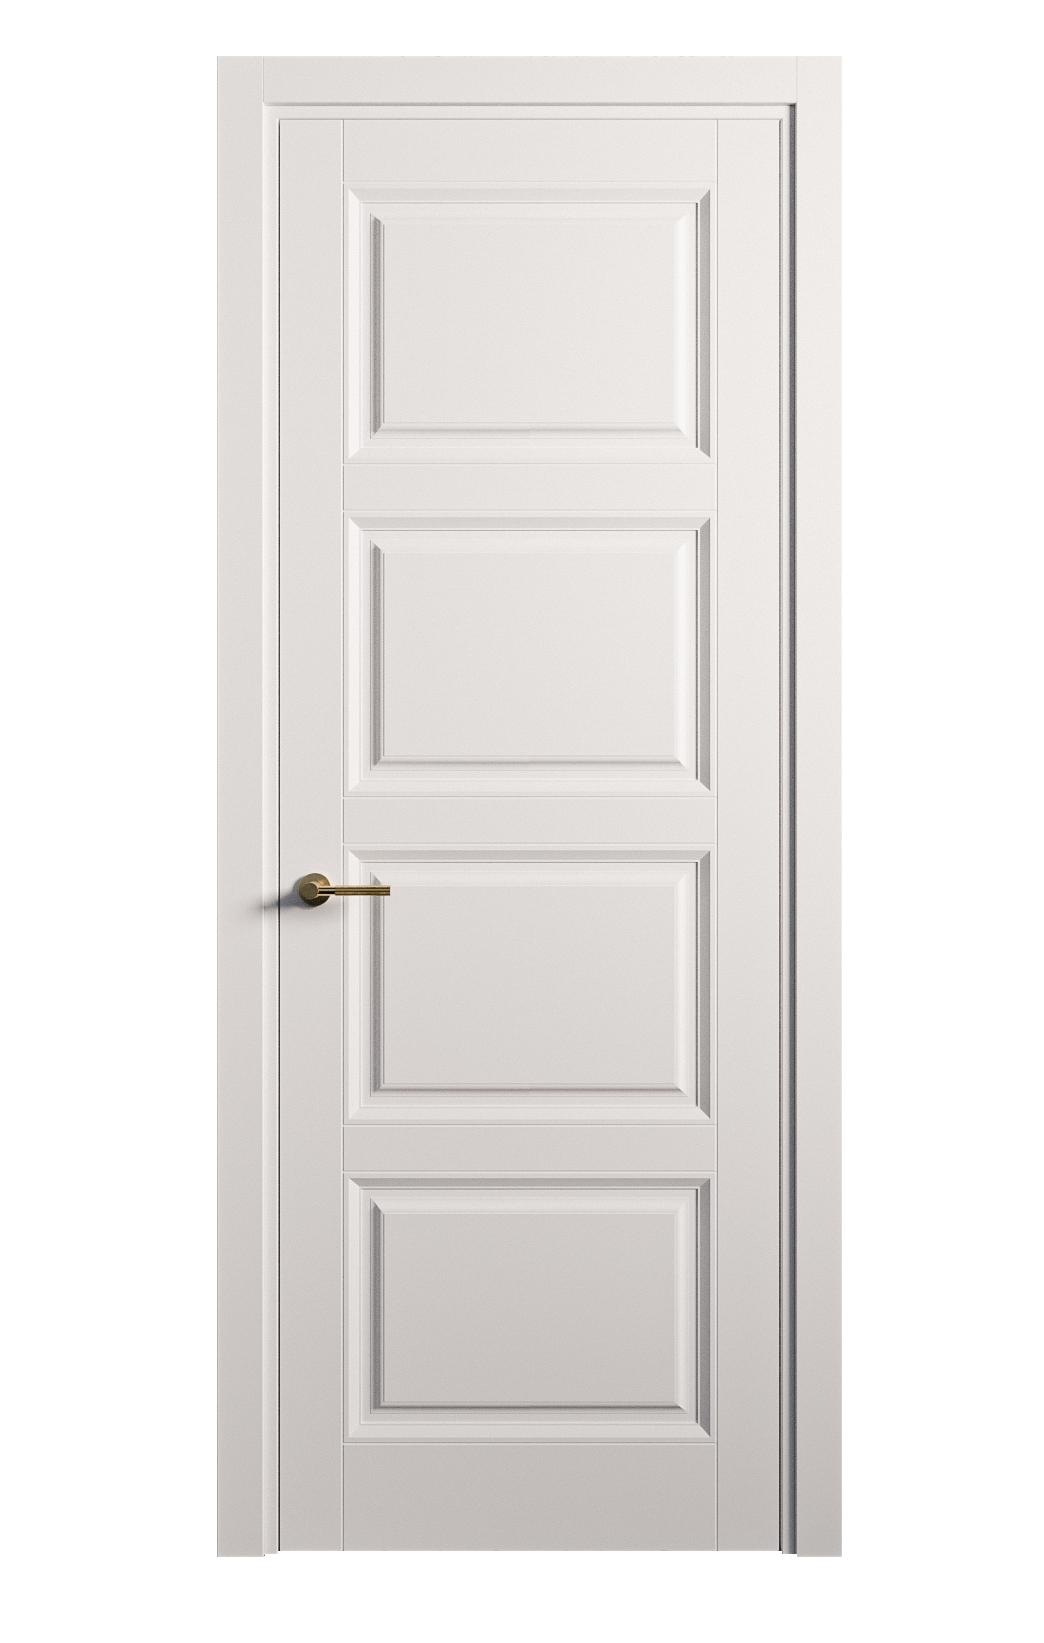 Межкомнатная дверь Venezia-4 глухая эмаль ral 9003 25875